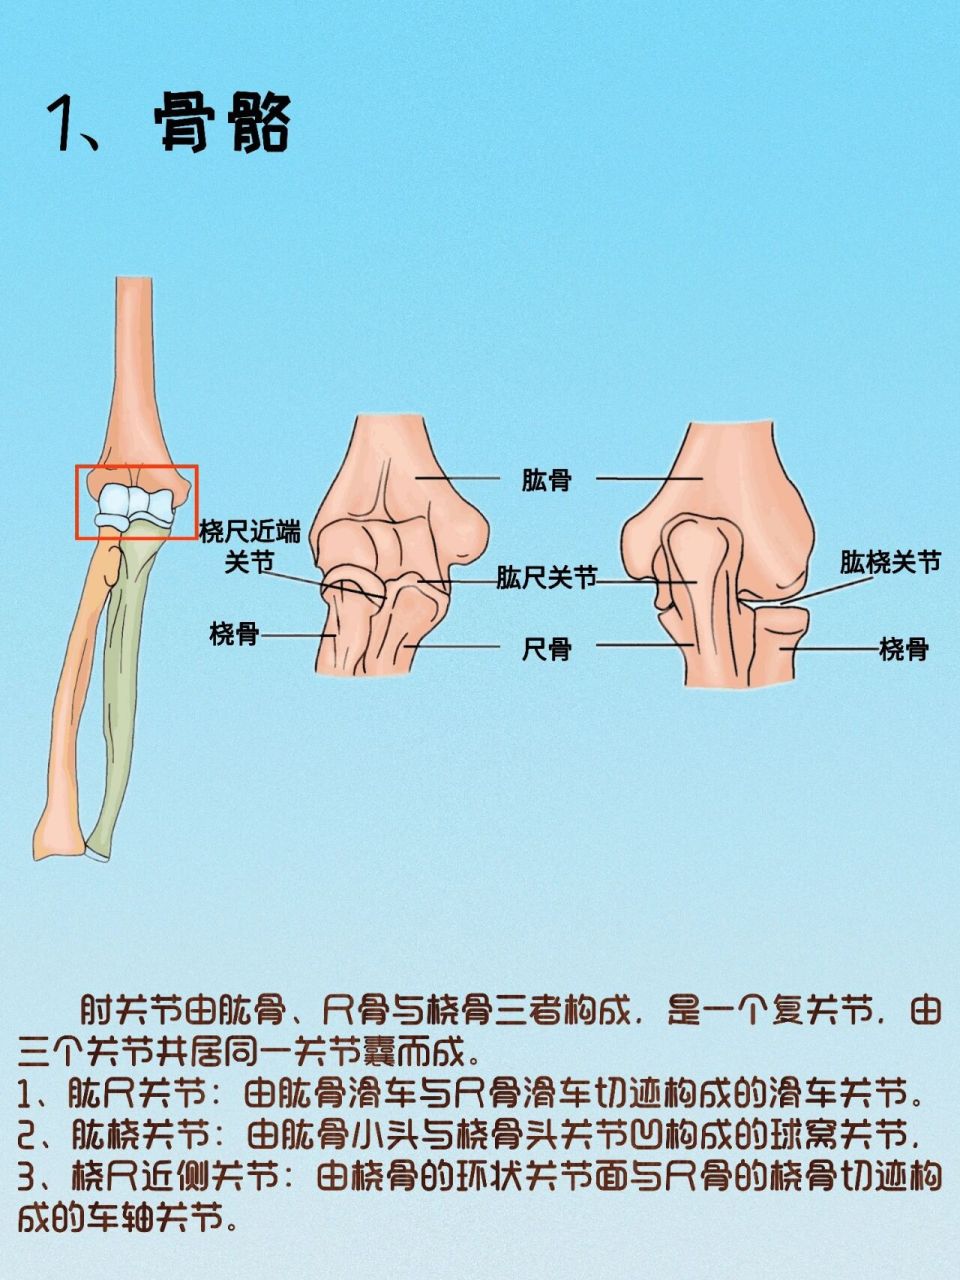 解剖日记之肘关节  简介:肘关节由肱骨,尺骨与桡骨三者构成,是一个复